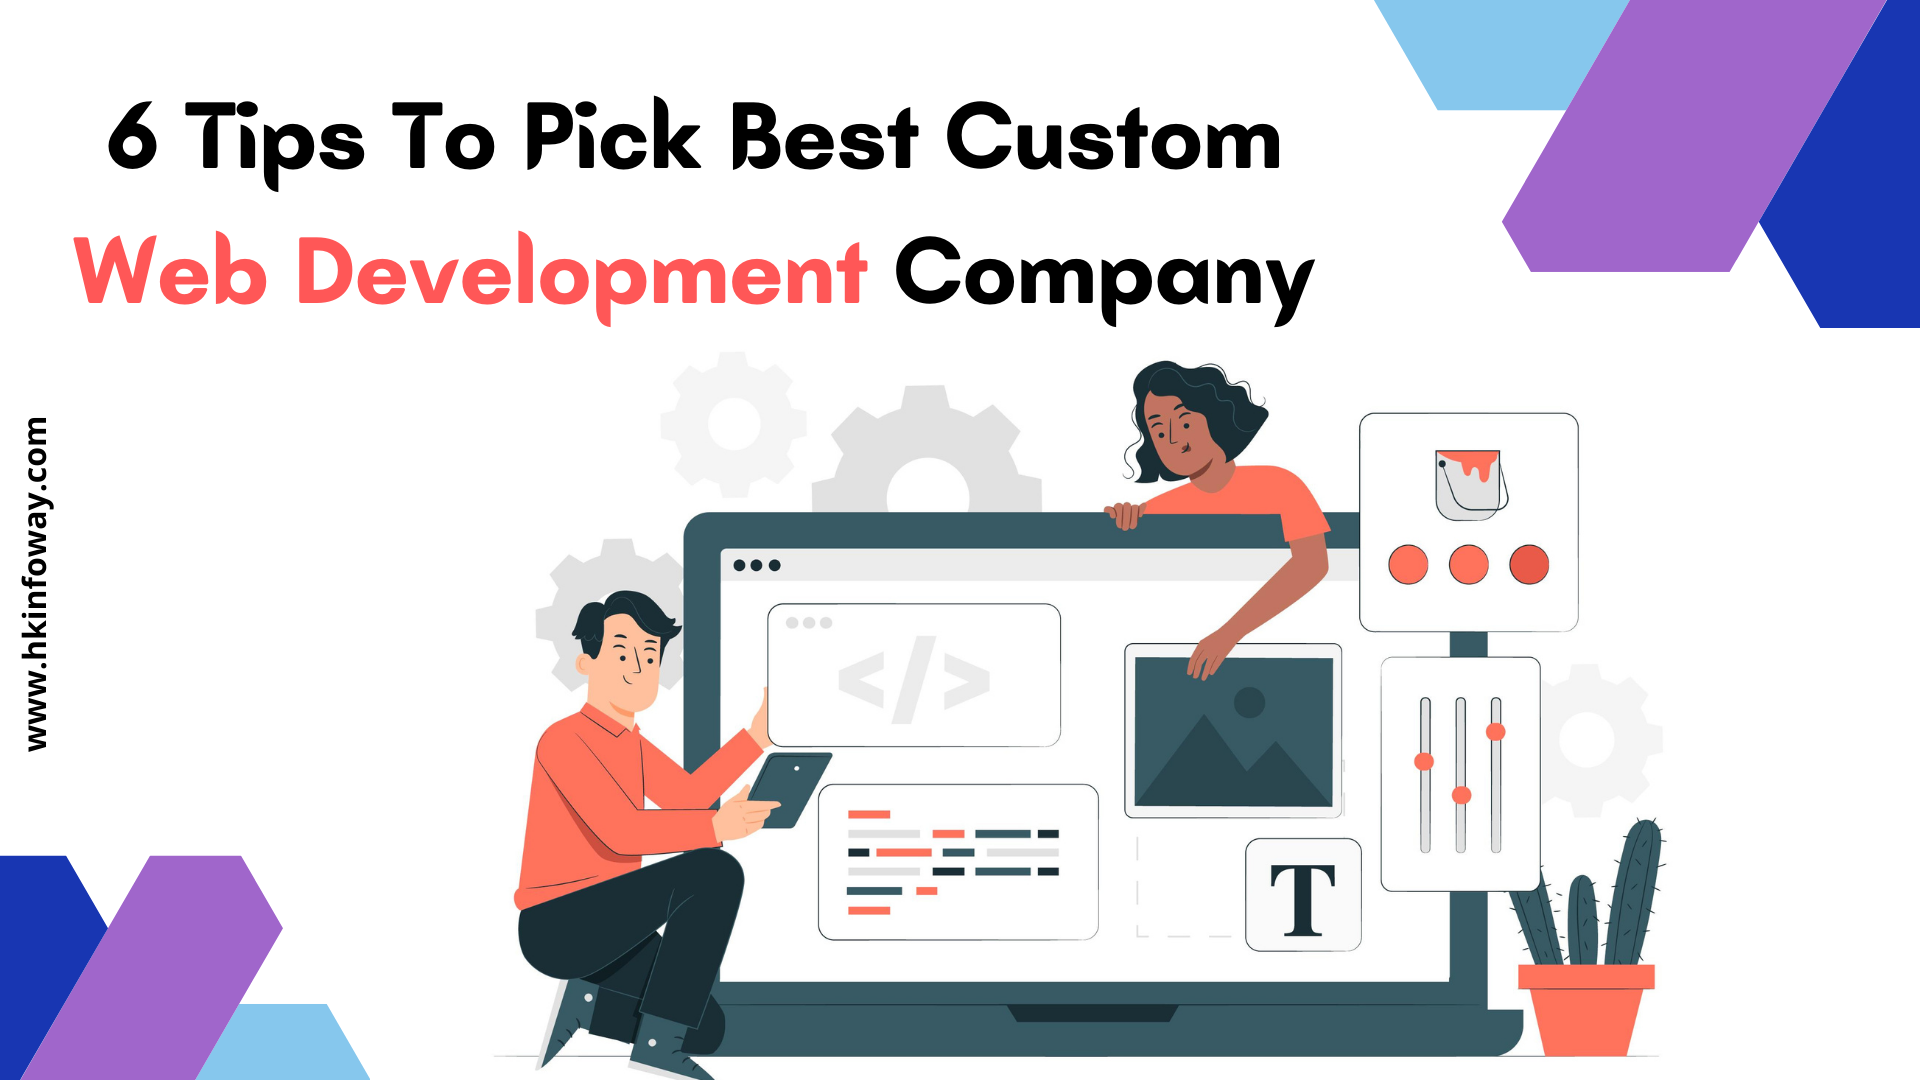 best ecommerce web development company